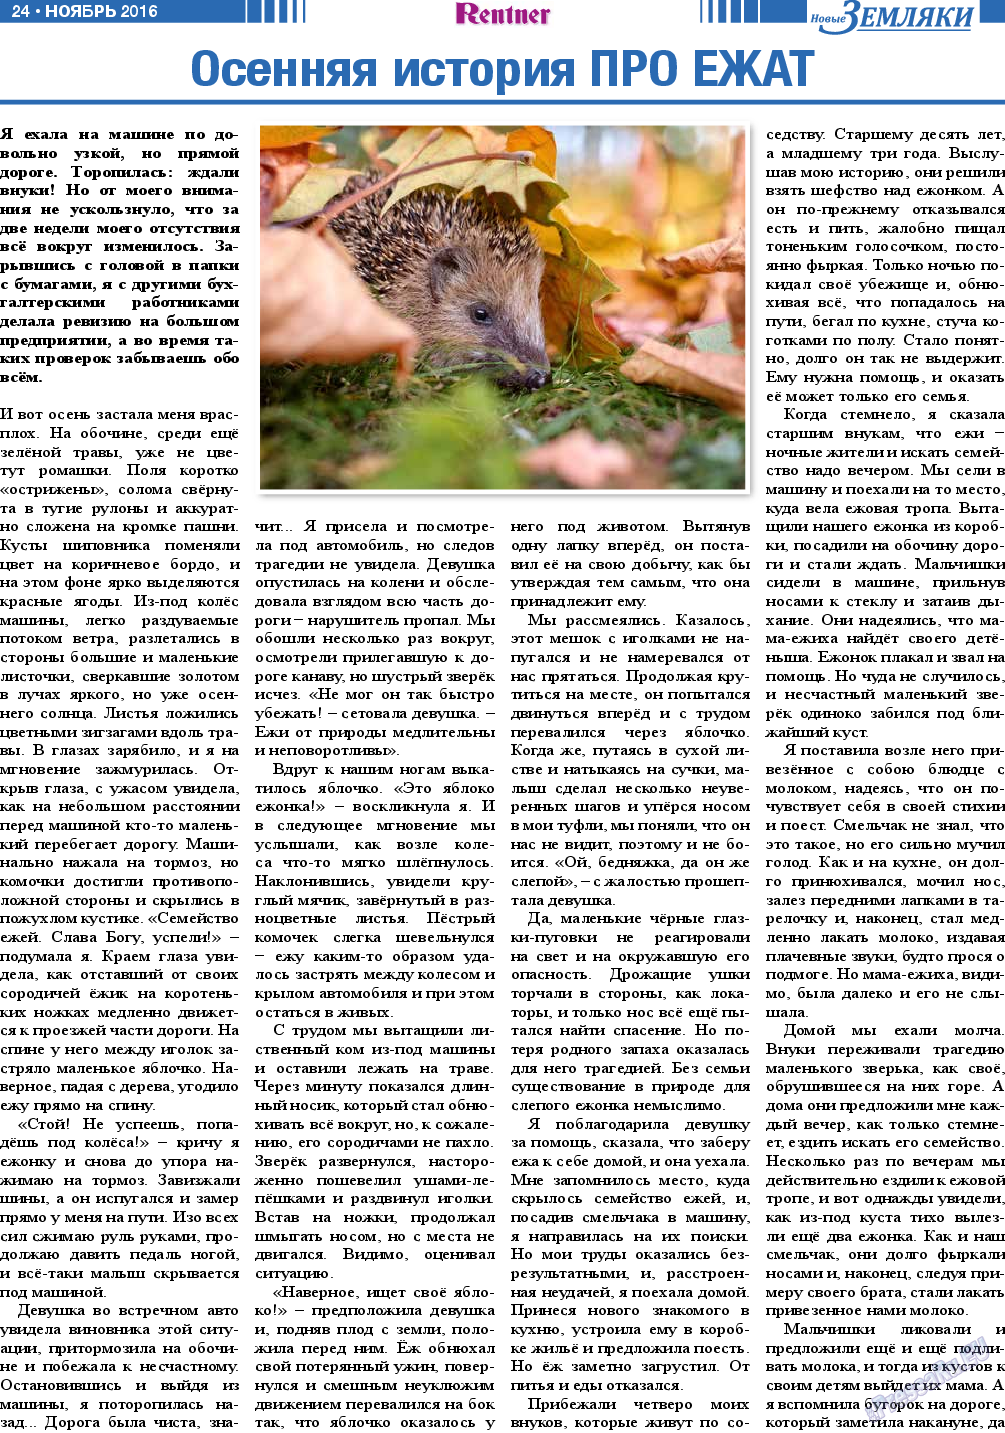 Новые Земляки (газета). 2016 год, номер 11, стр. 24